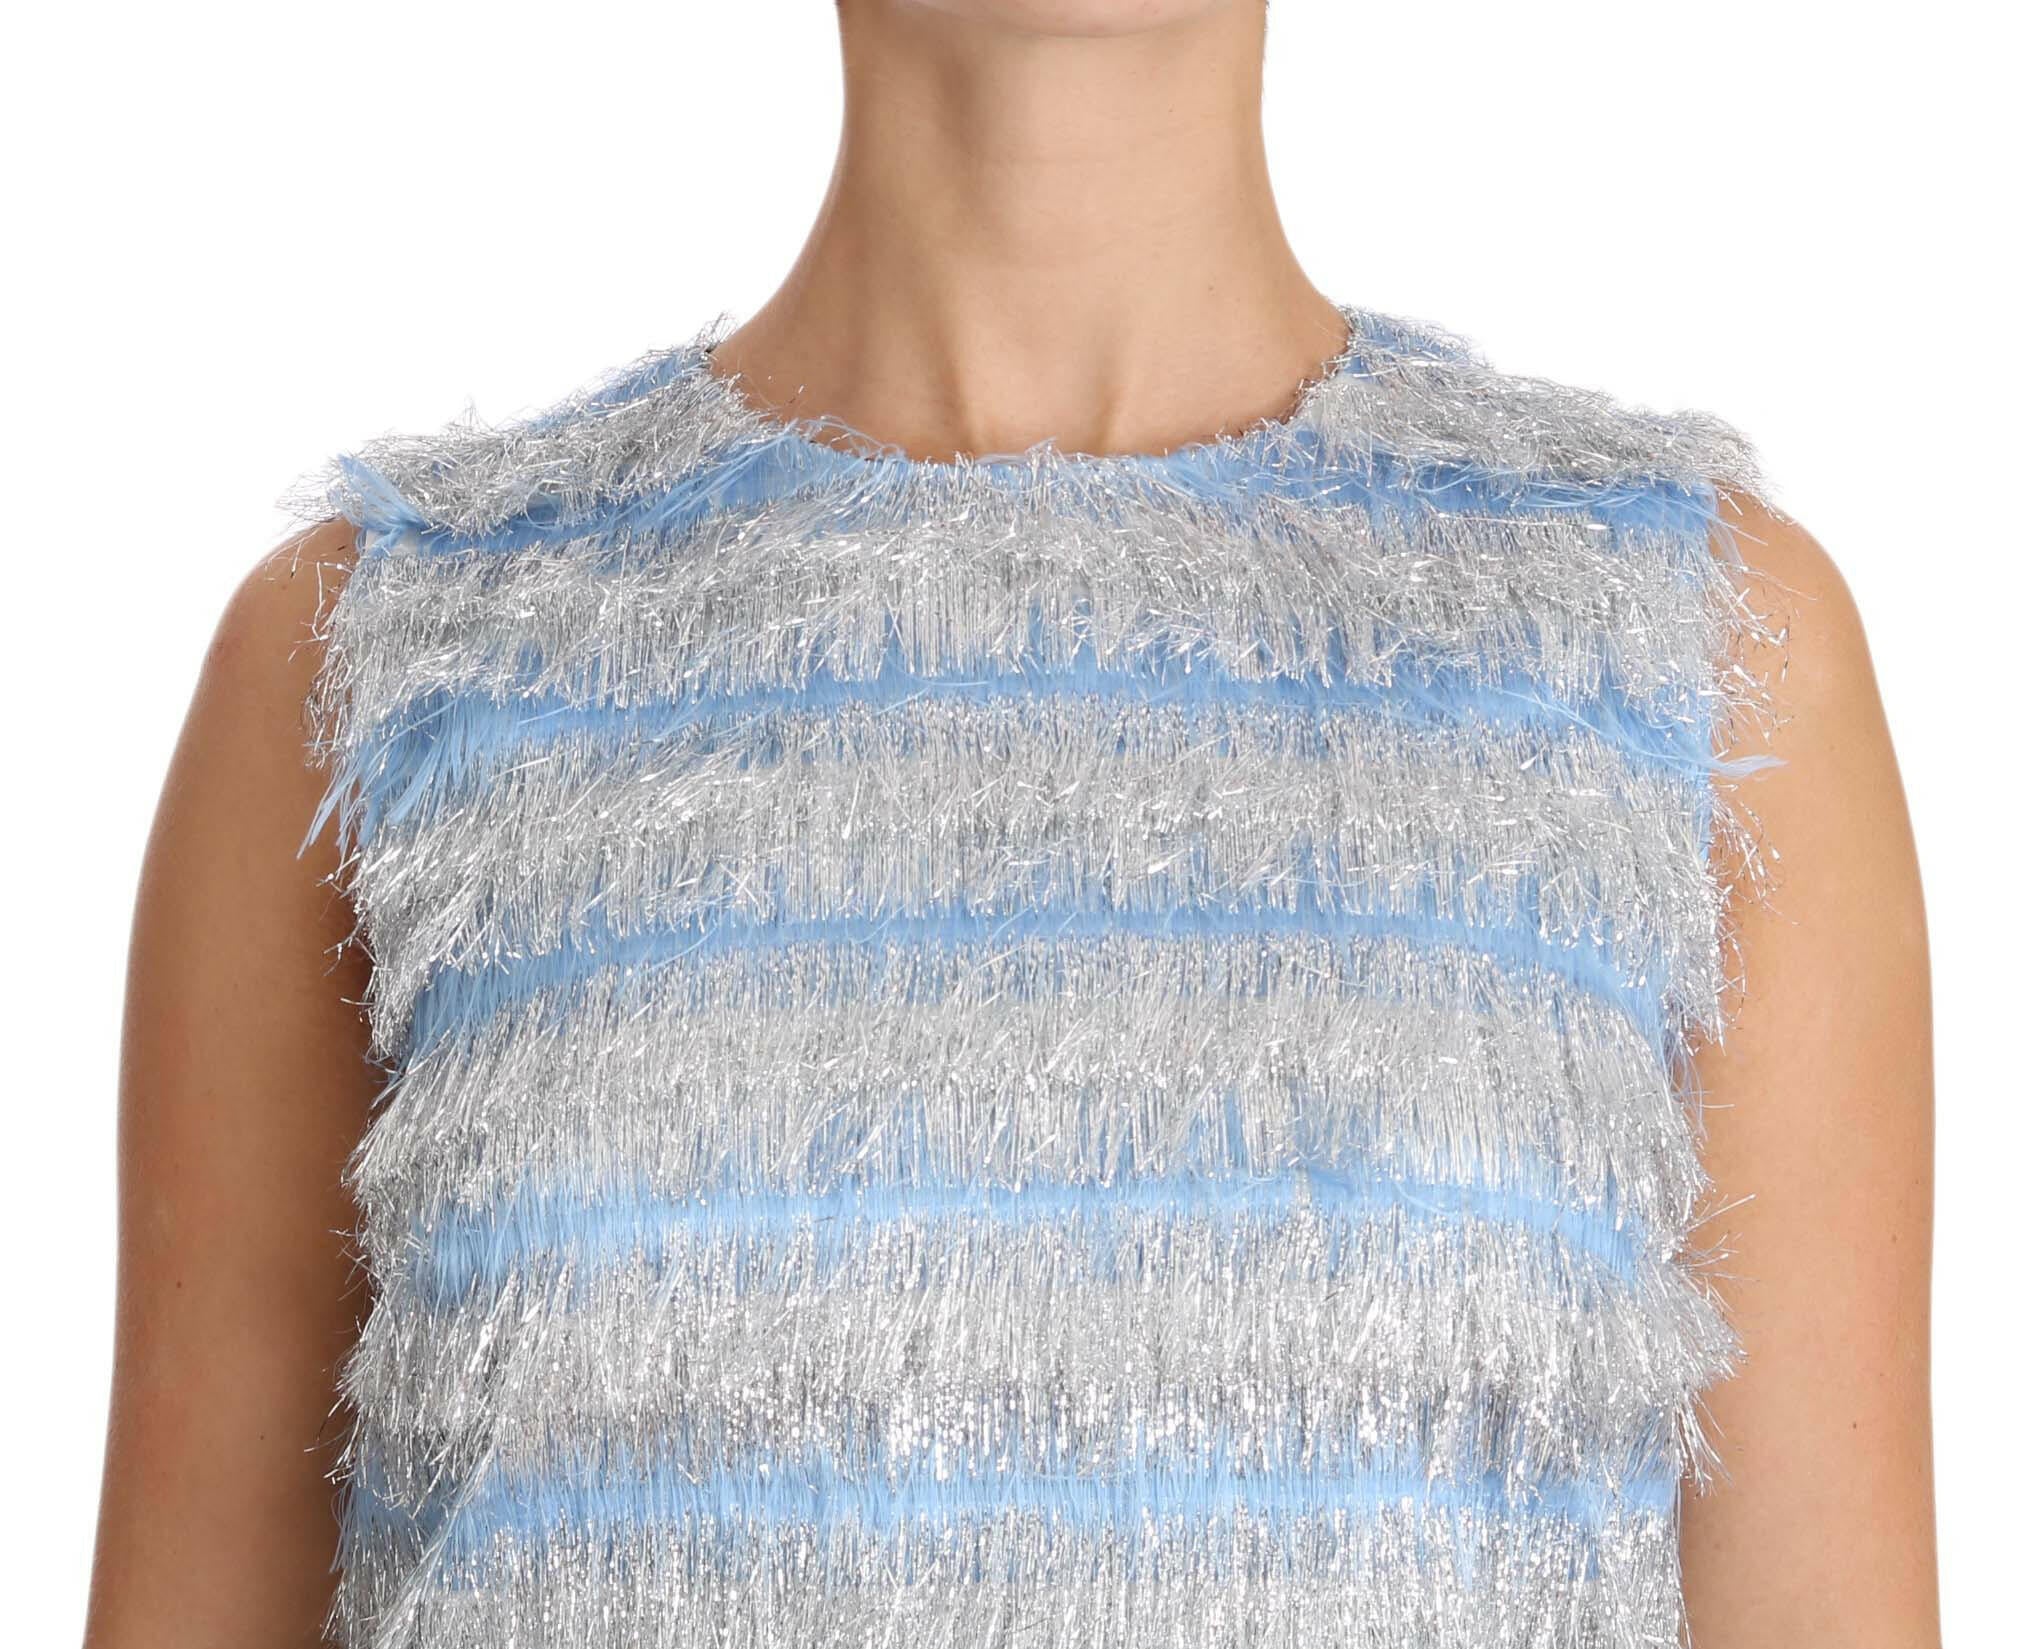 Dolce & Gabbana Elegant Light Blue Fringe Shift Dress.